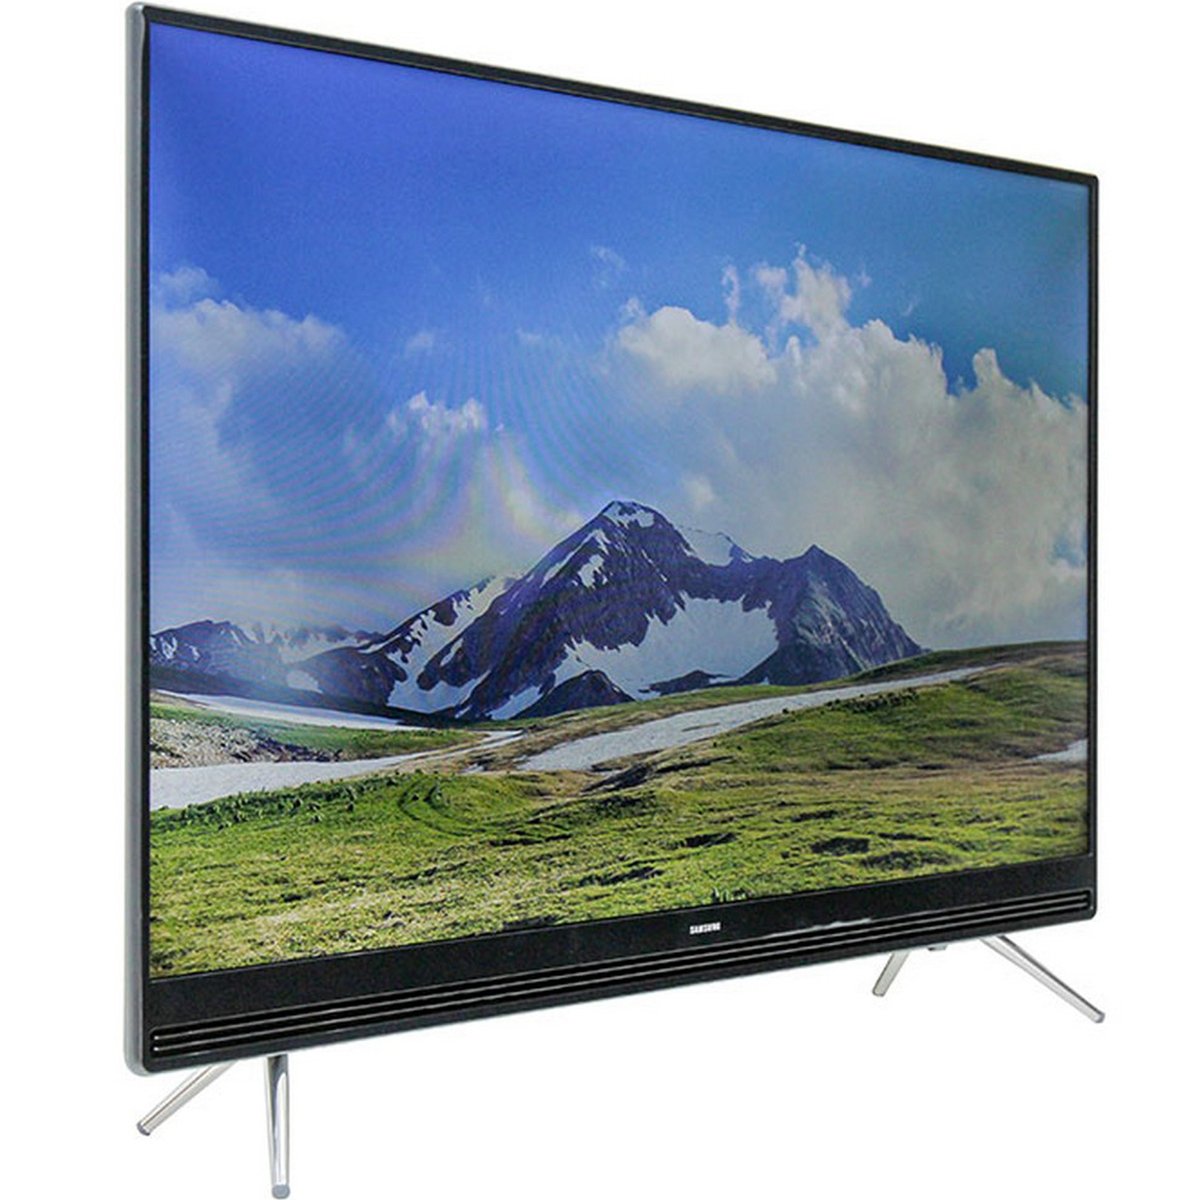 Samsung Full HD Smart LED TV UA55K5300 55inch